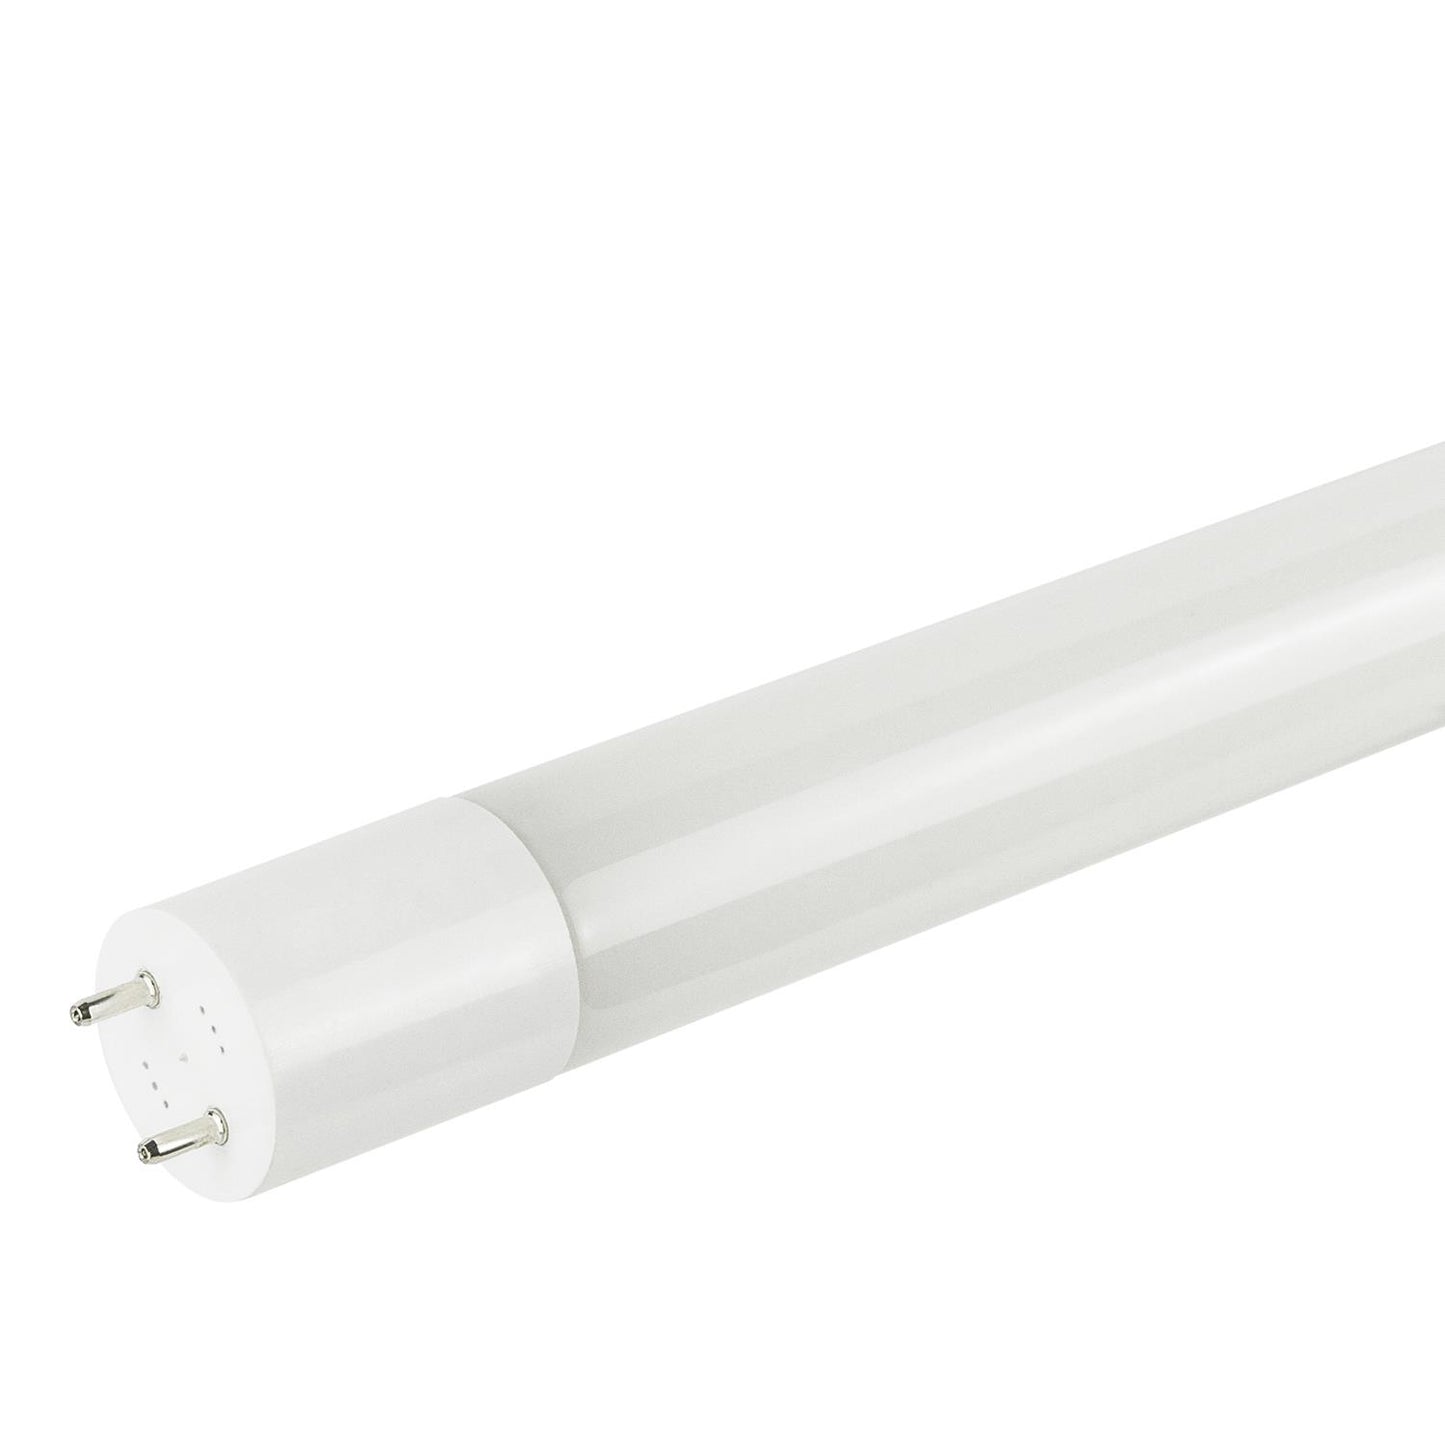 Sunlite T8/LED/BPD/4'/17W/50K 17 Watt T8 Lamp Medium Bi-Pin (G13) Base Super White